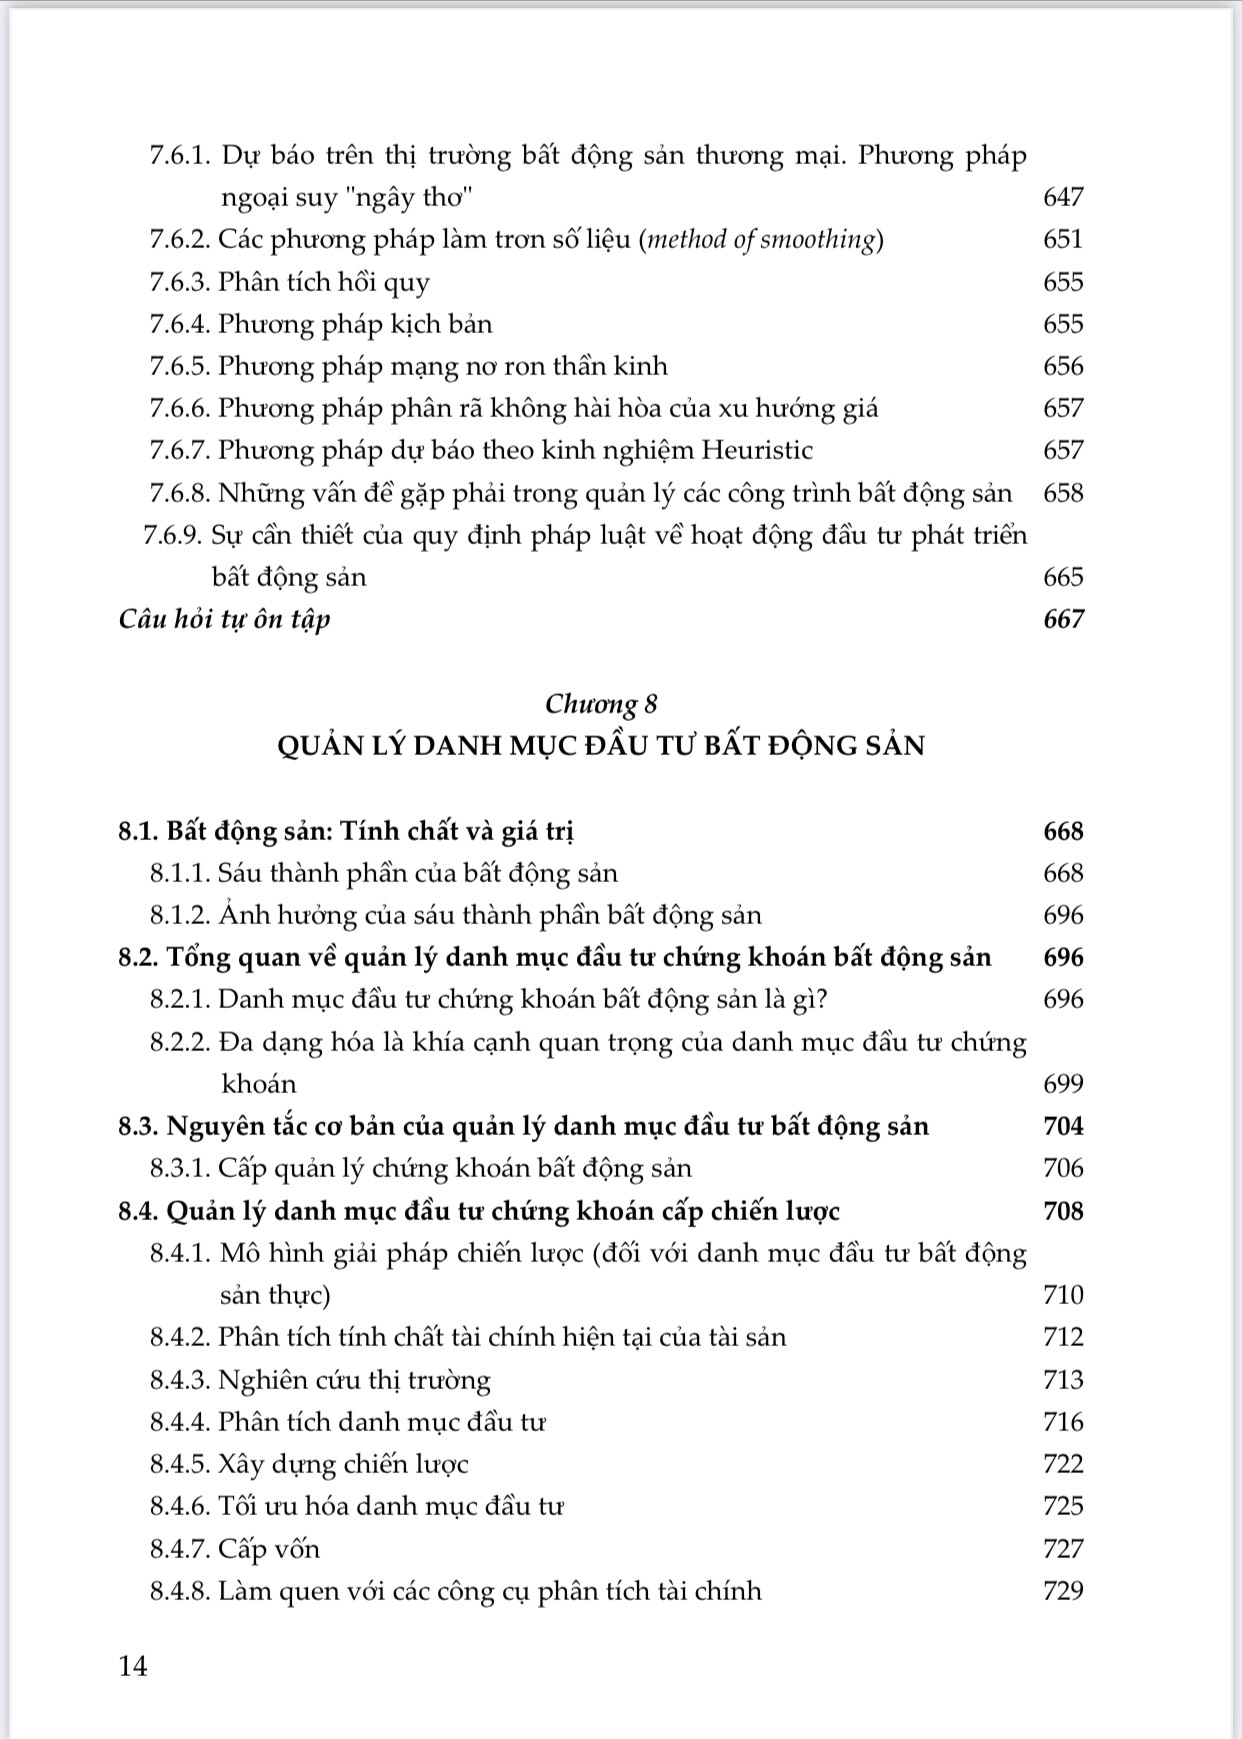 Kinh tế và Quản lý Bất động sản - Giáo trình dịch từ tiếng Nga sang tiếng Việt xuất bản lần thứ 2, sửa chữa và bổ sung